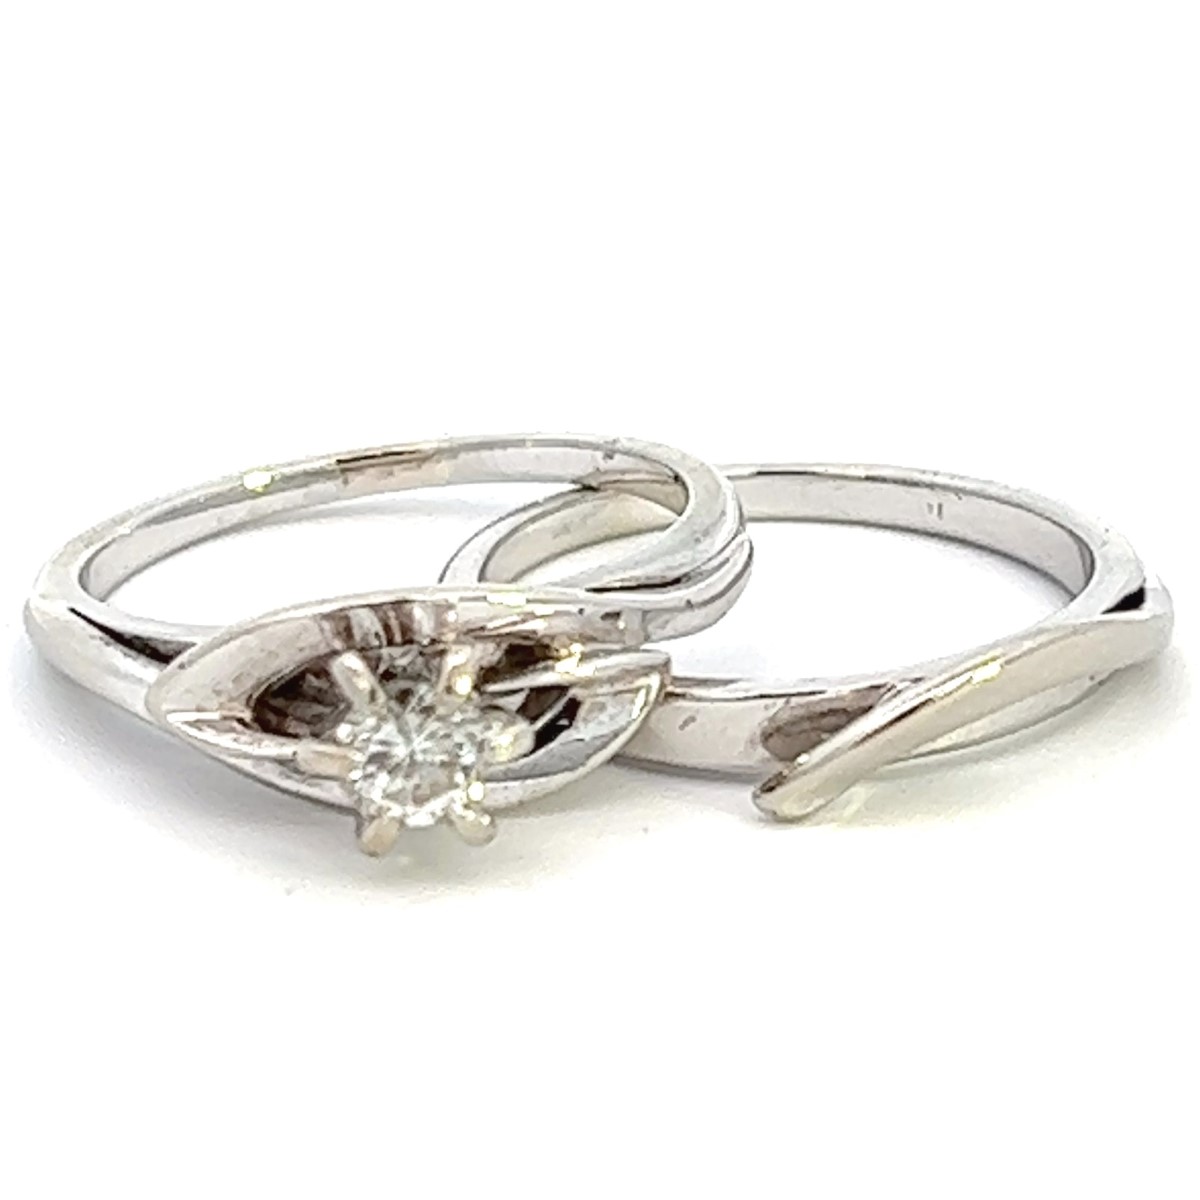 Tues Nov 15 – 10K White Gold Diamond Wedding Set – $399